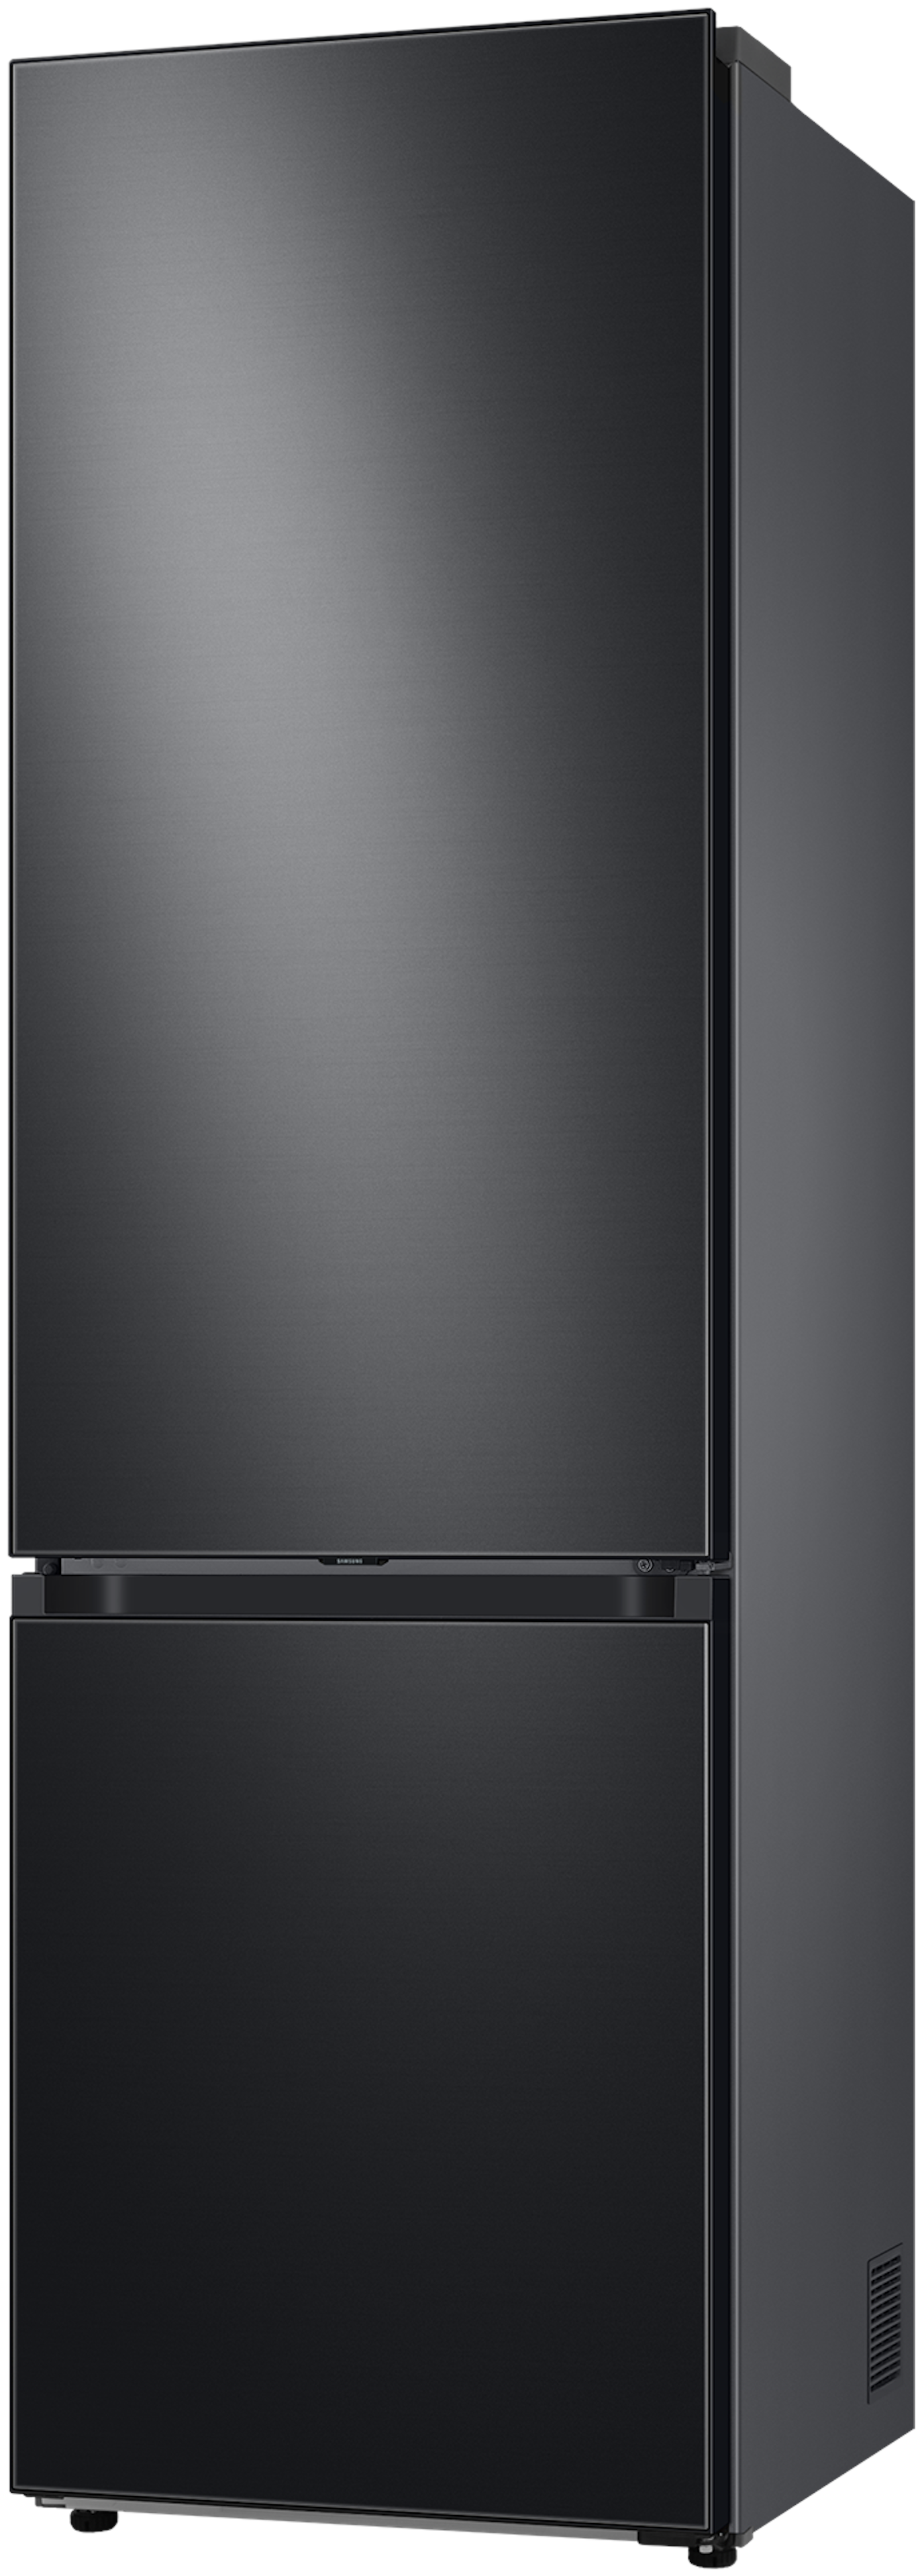 Samsung RB38C7B6CB1/EF vrijstaand koelkast afbeelding 5